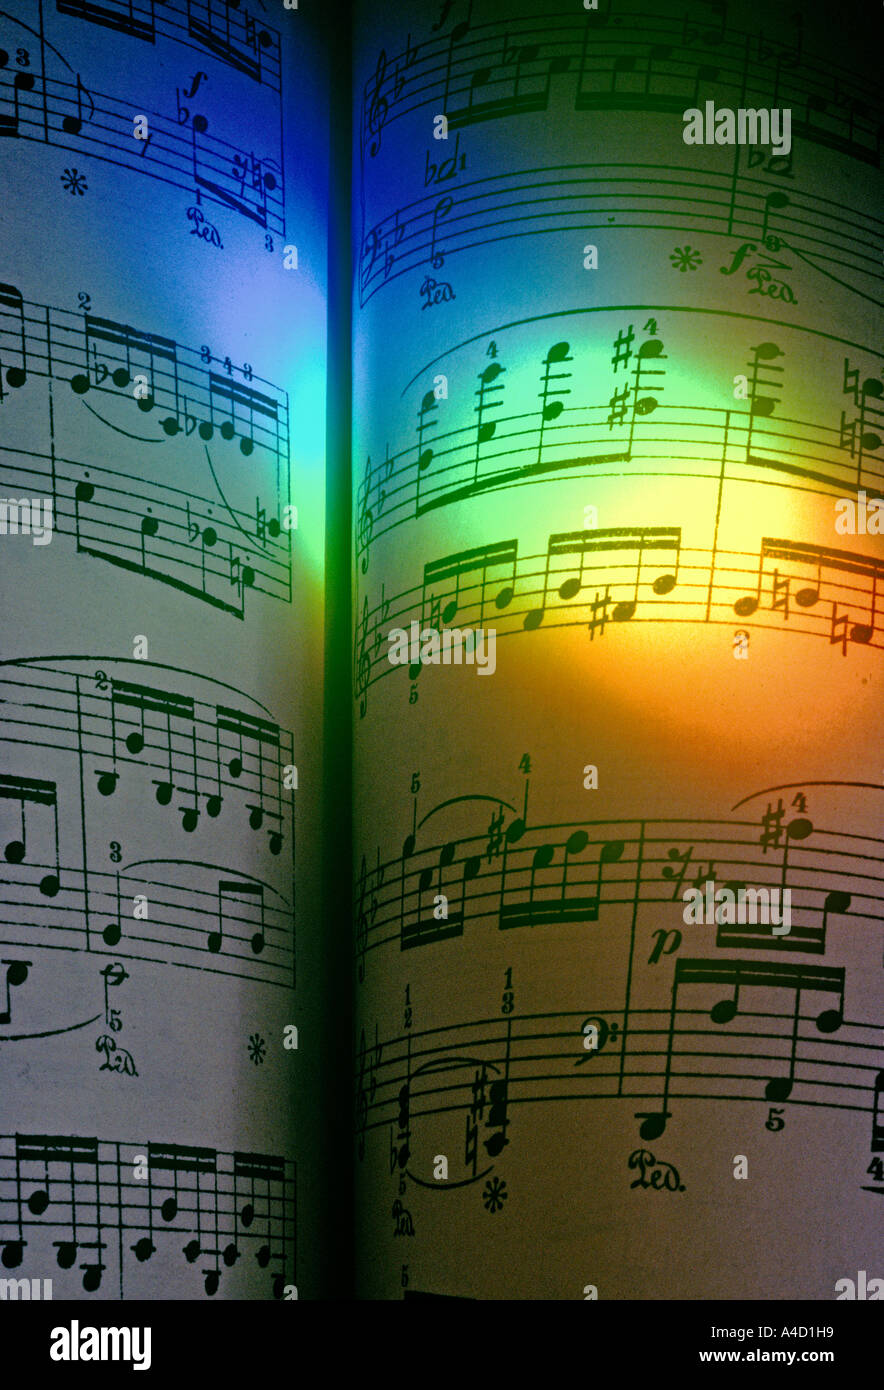 Un arcobaleno di colori espressi da un prisma, illumina una pagina della musica pianistica di Chopin. Foto Stock